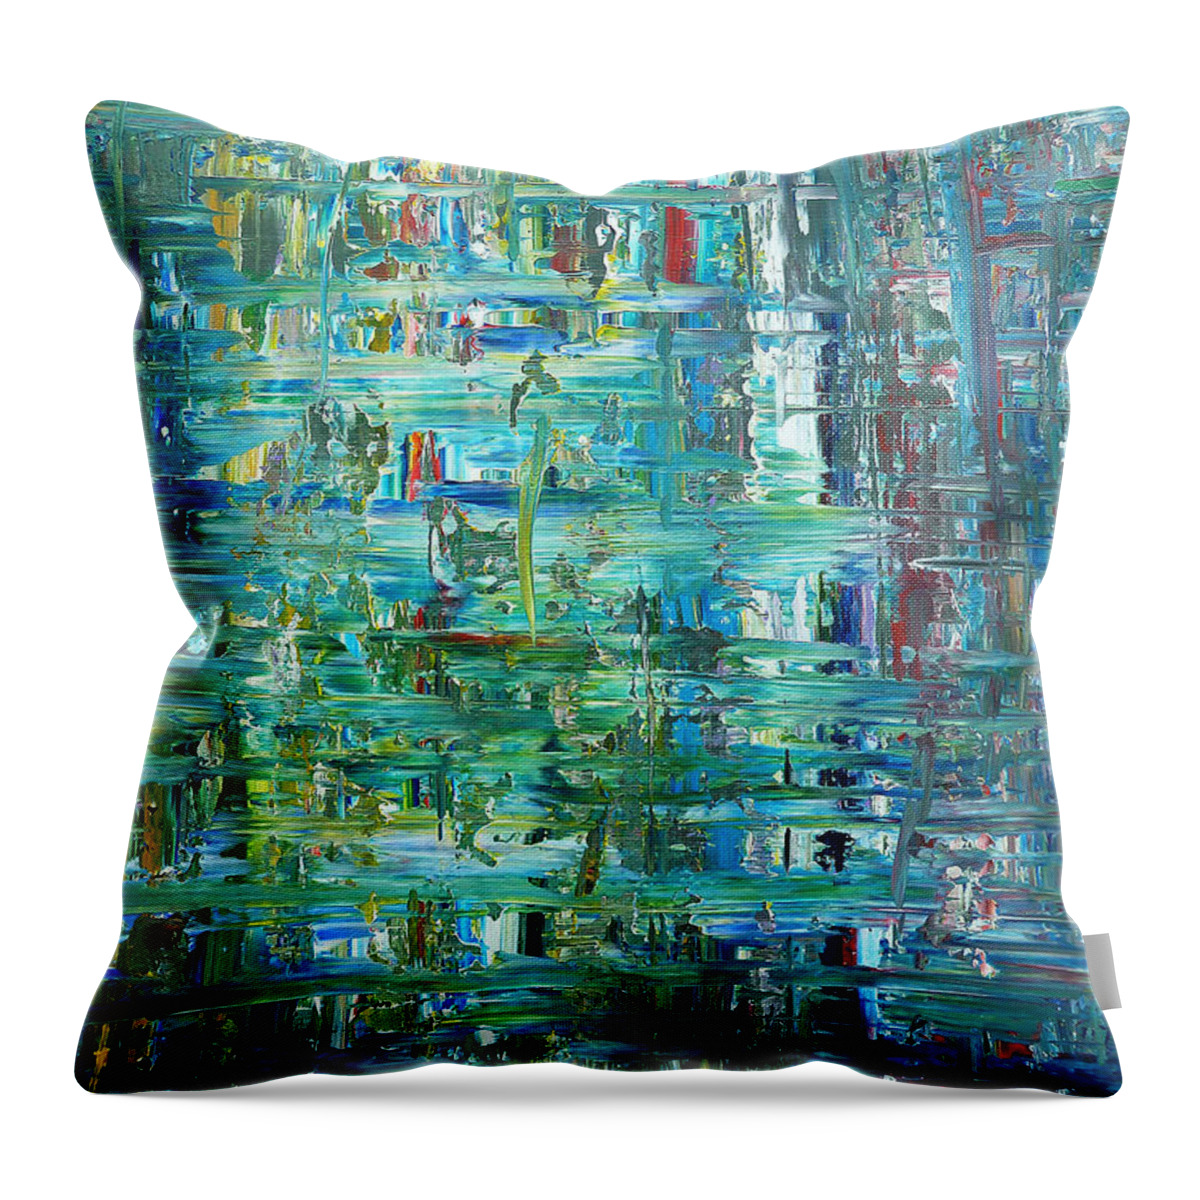 Derek Kaplan Art Throw Pillow featuring the painting The Emerald Forest by Derek Kaplan